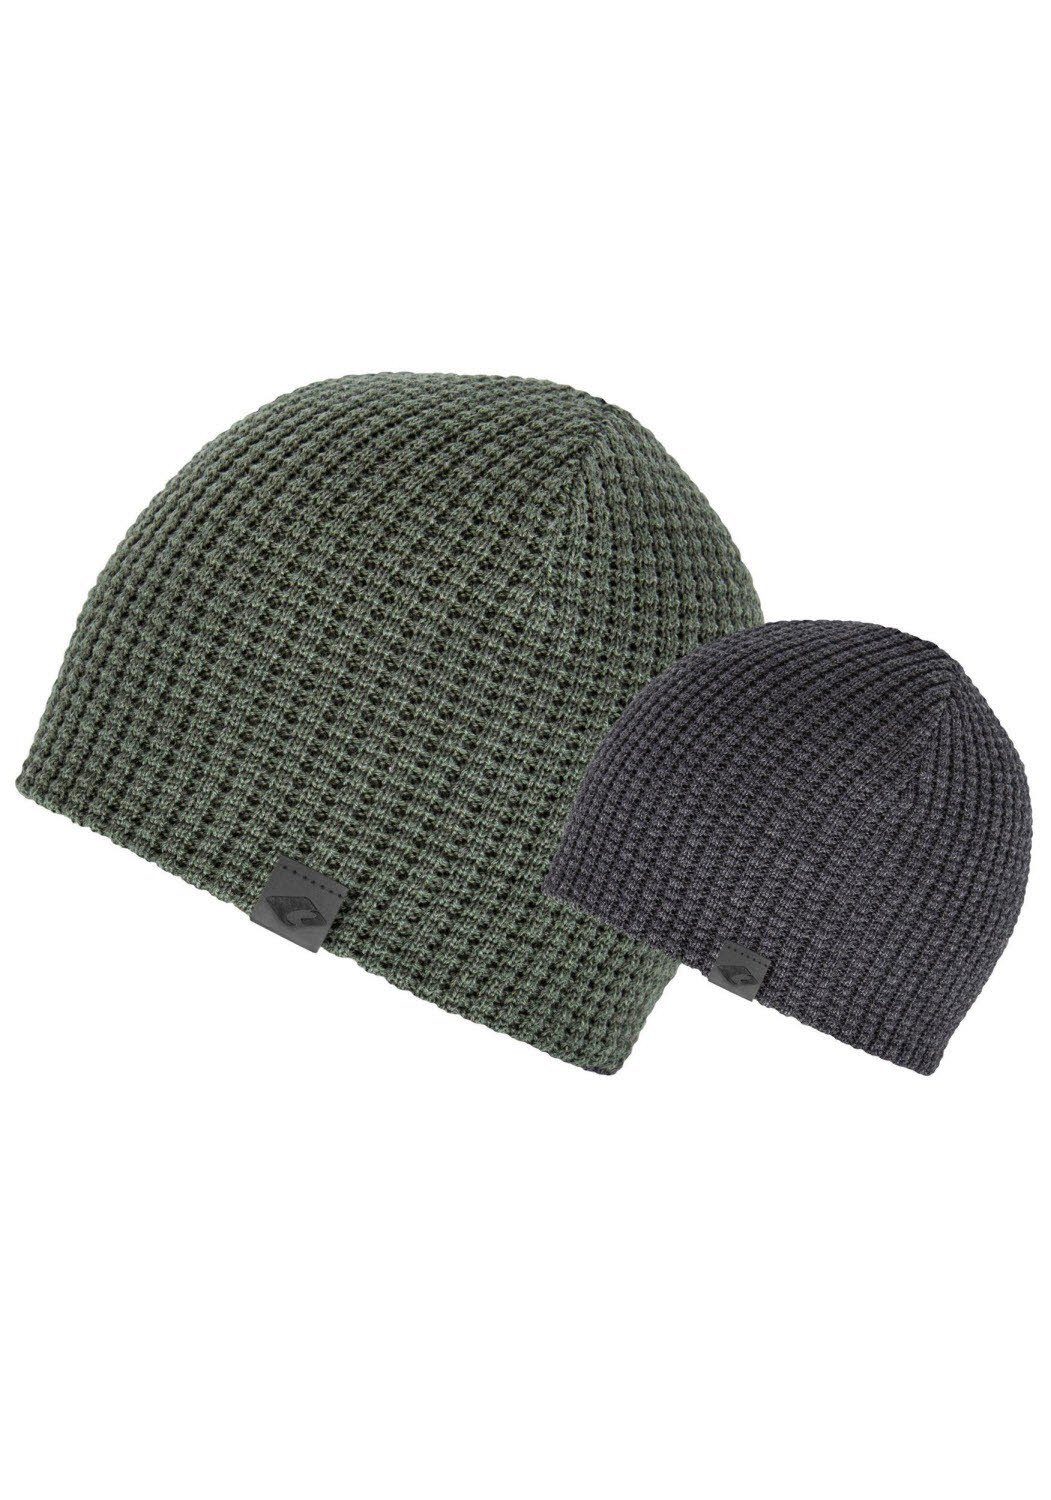 chillouts Beanie Matthew Hat, olive-dark-grey | Schiebermützen